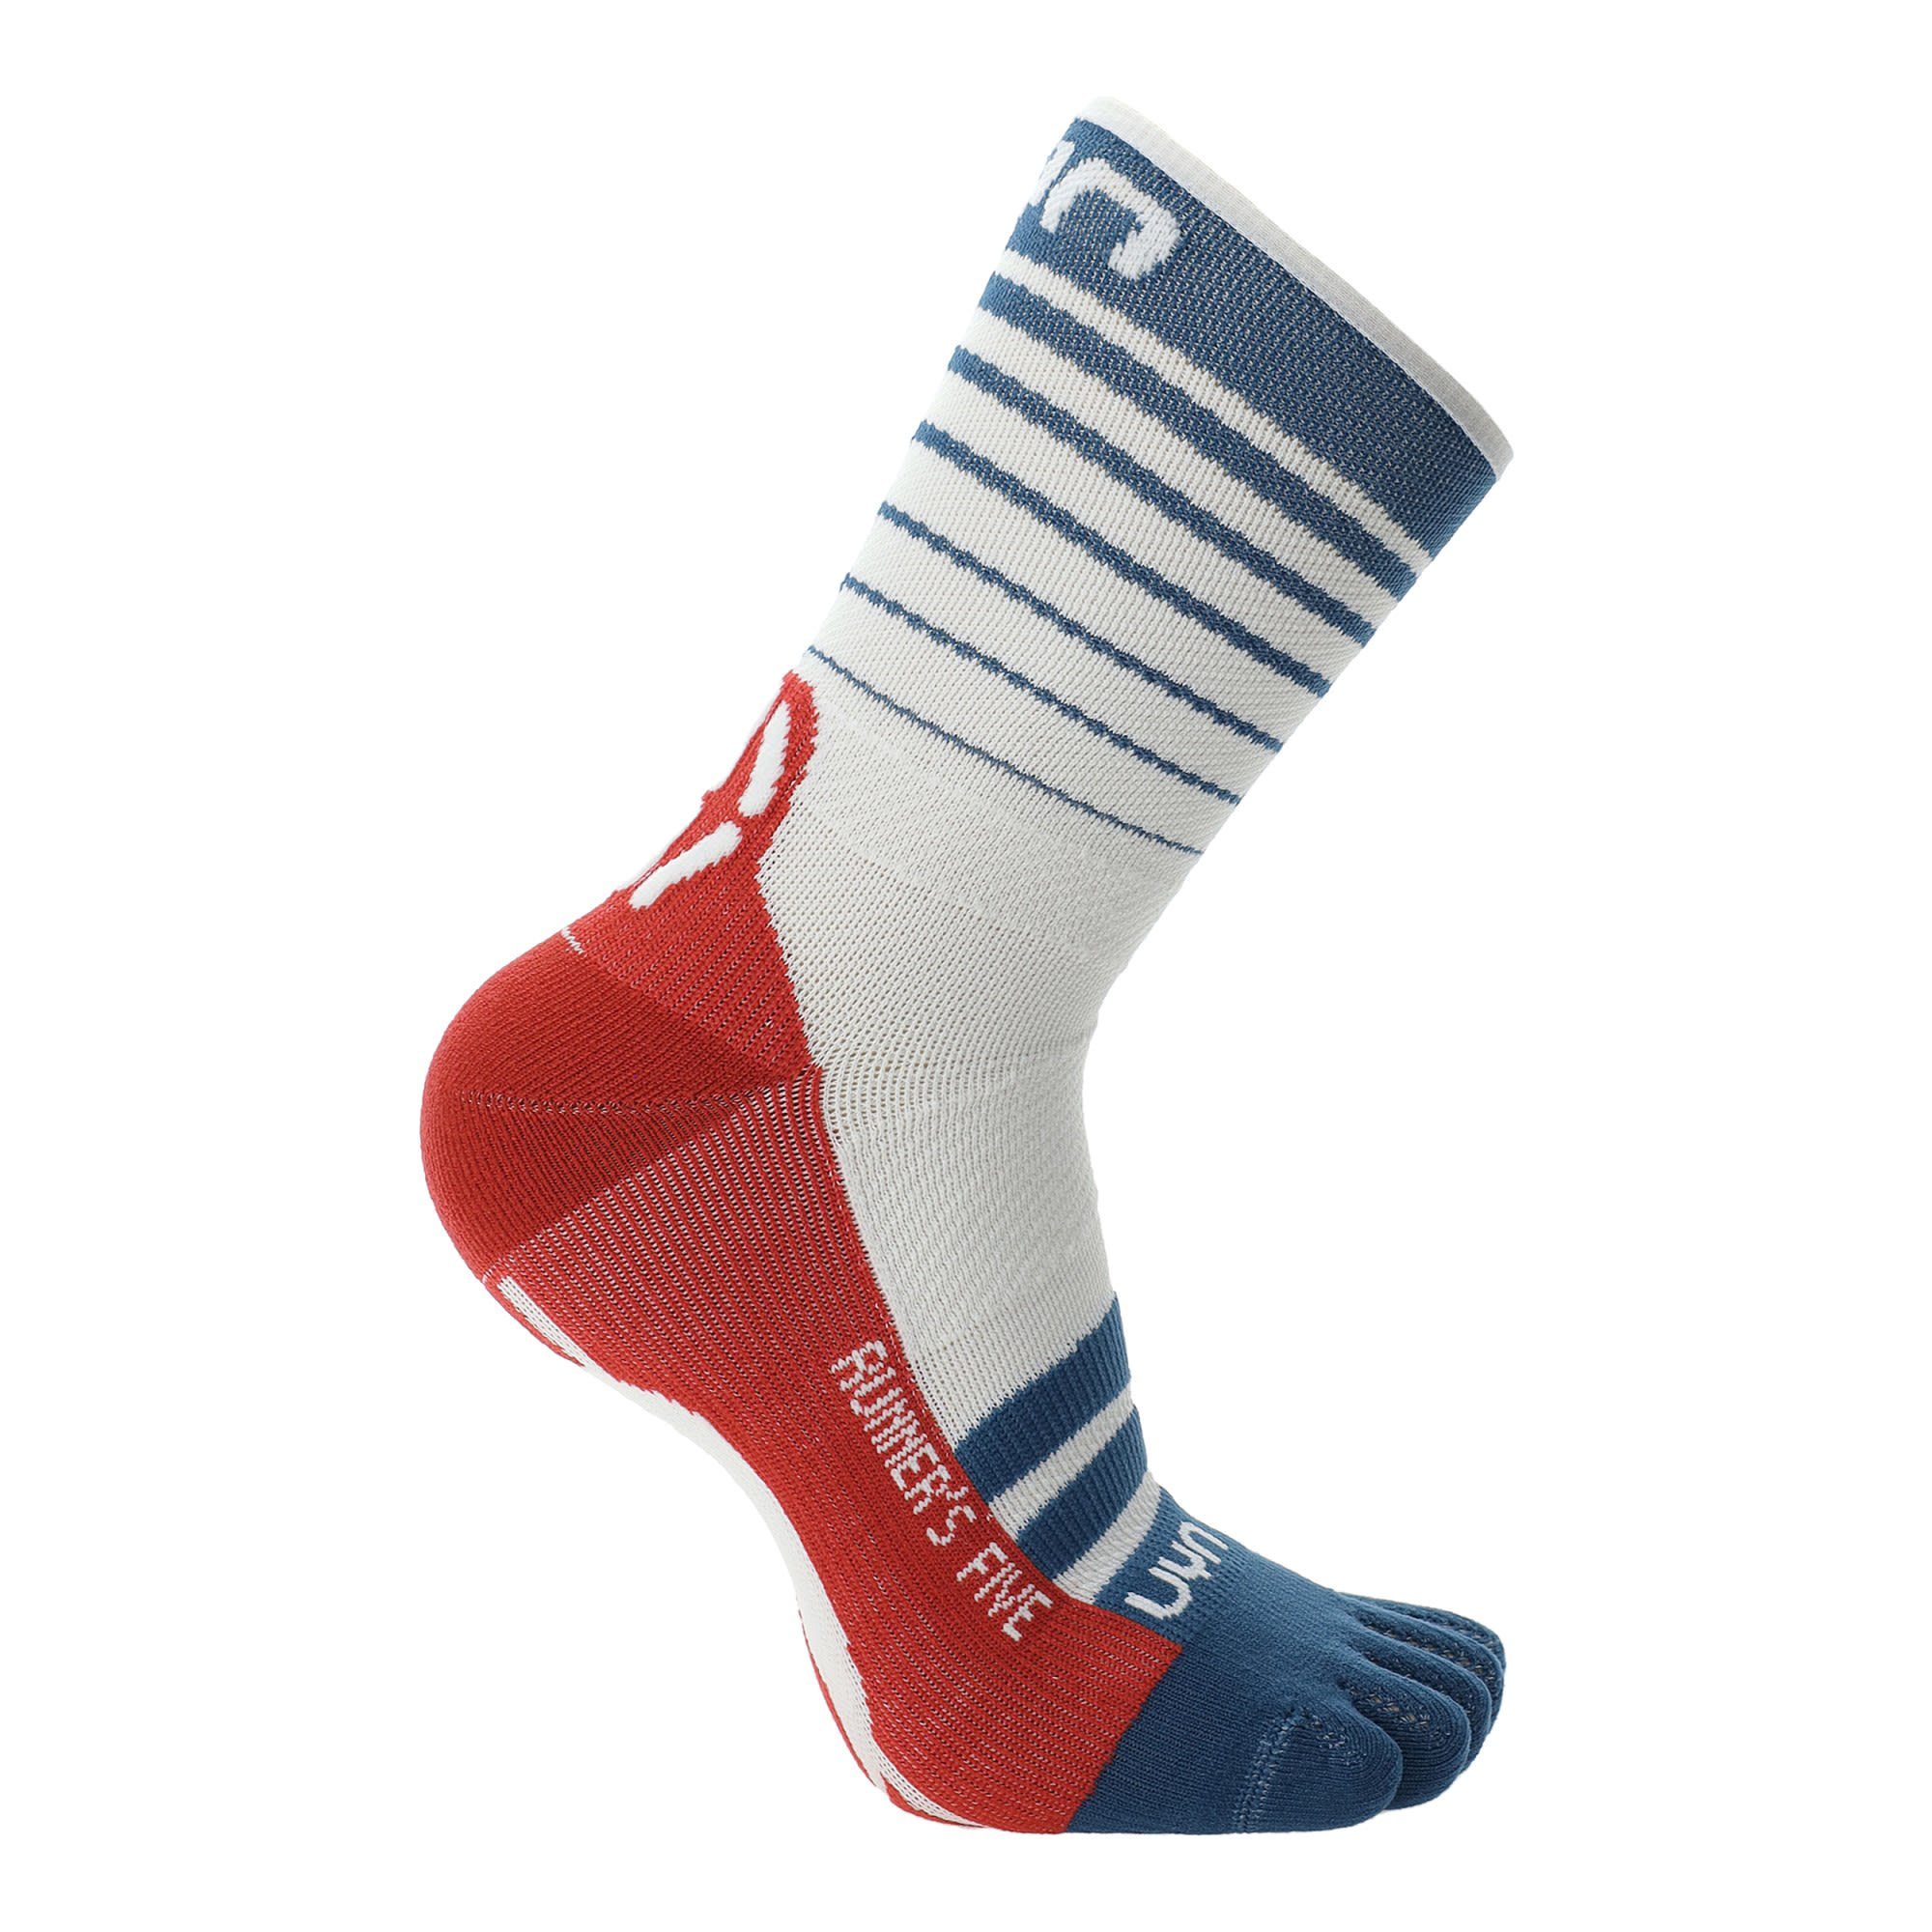 M UYN Uyn Socks Thermosocken - Runner's Blue Red Blue - White Herren Five